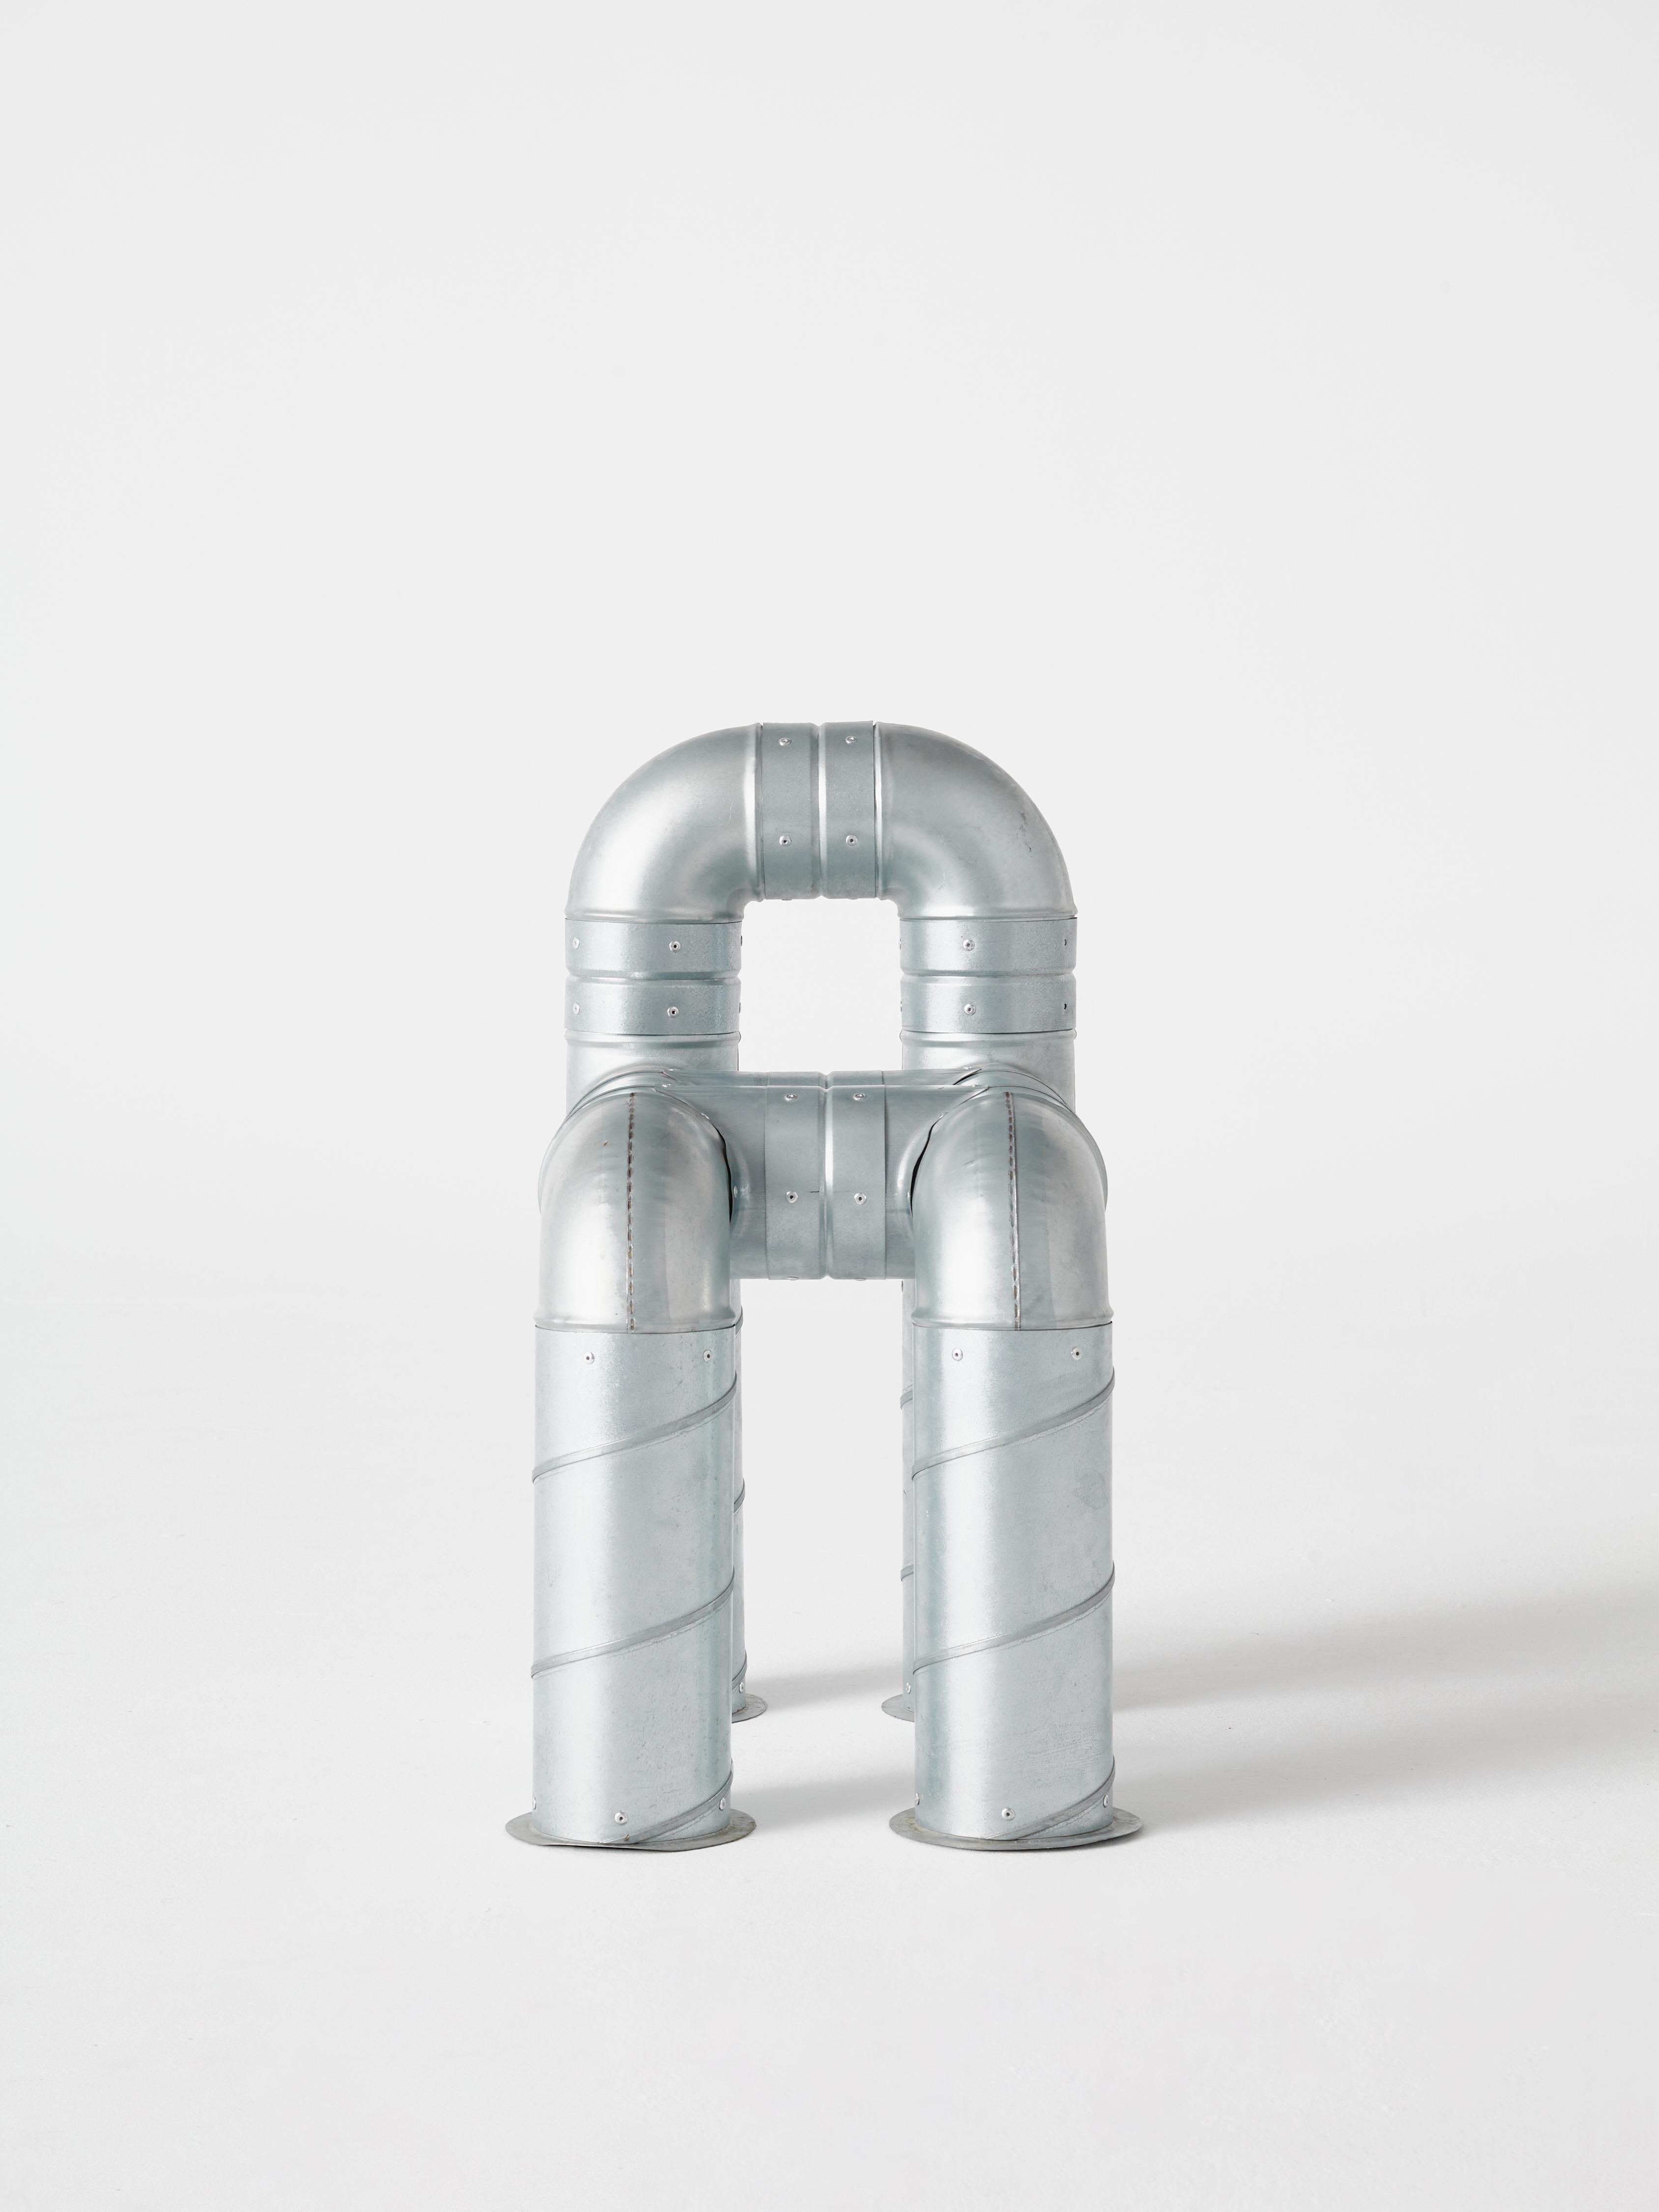 Cette chaise en acier tubulaire fait partie de la série O.F.I.S (Objects From Intersticial Space), une recherche permanente sur le potentiel narratif des matériaux industriels. Muñoz a conçu cette chaise tubulaire comme une exploration du potentiel